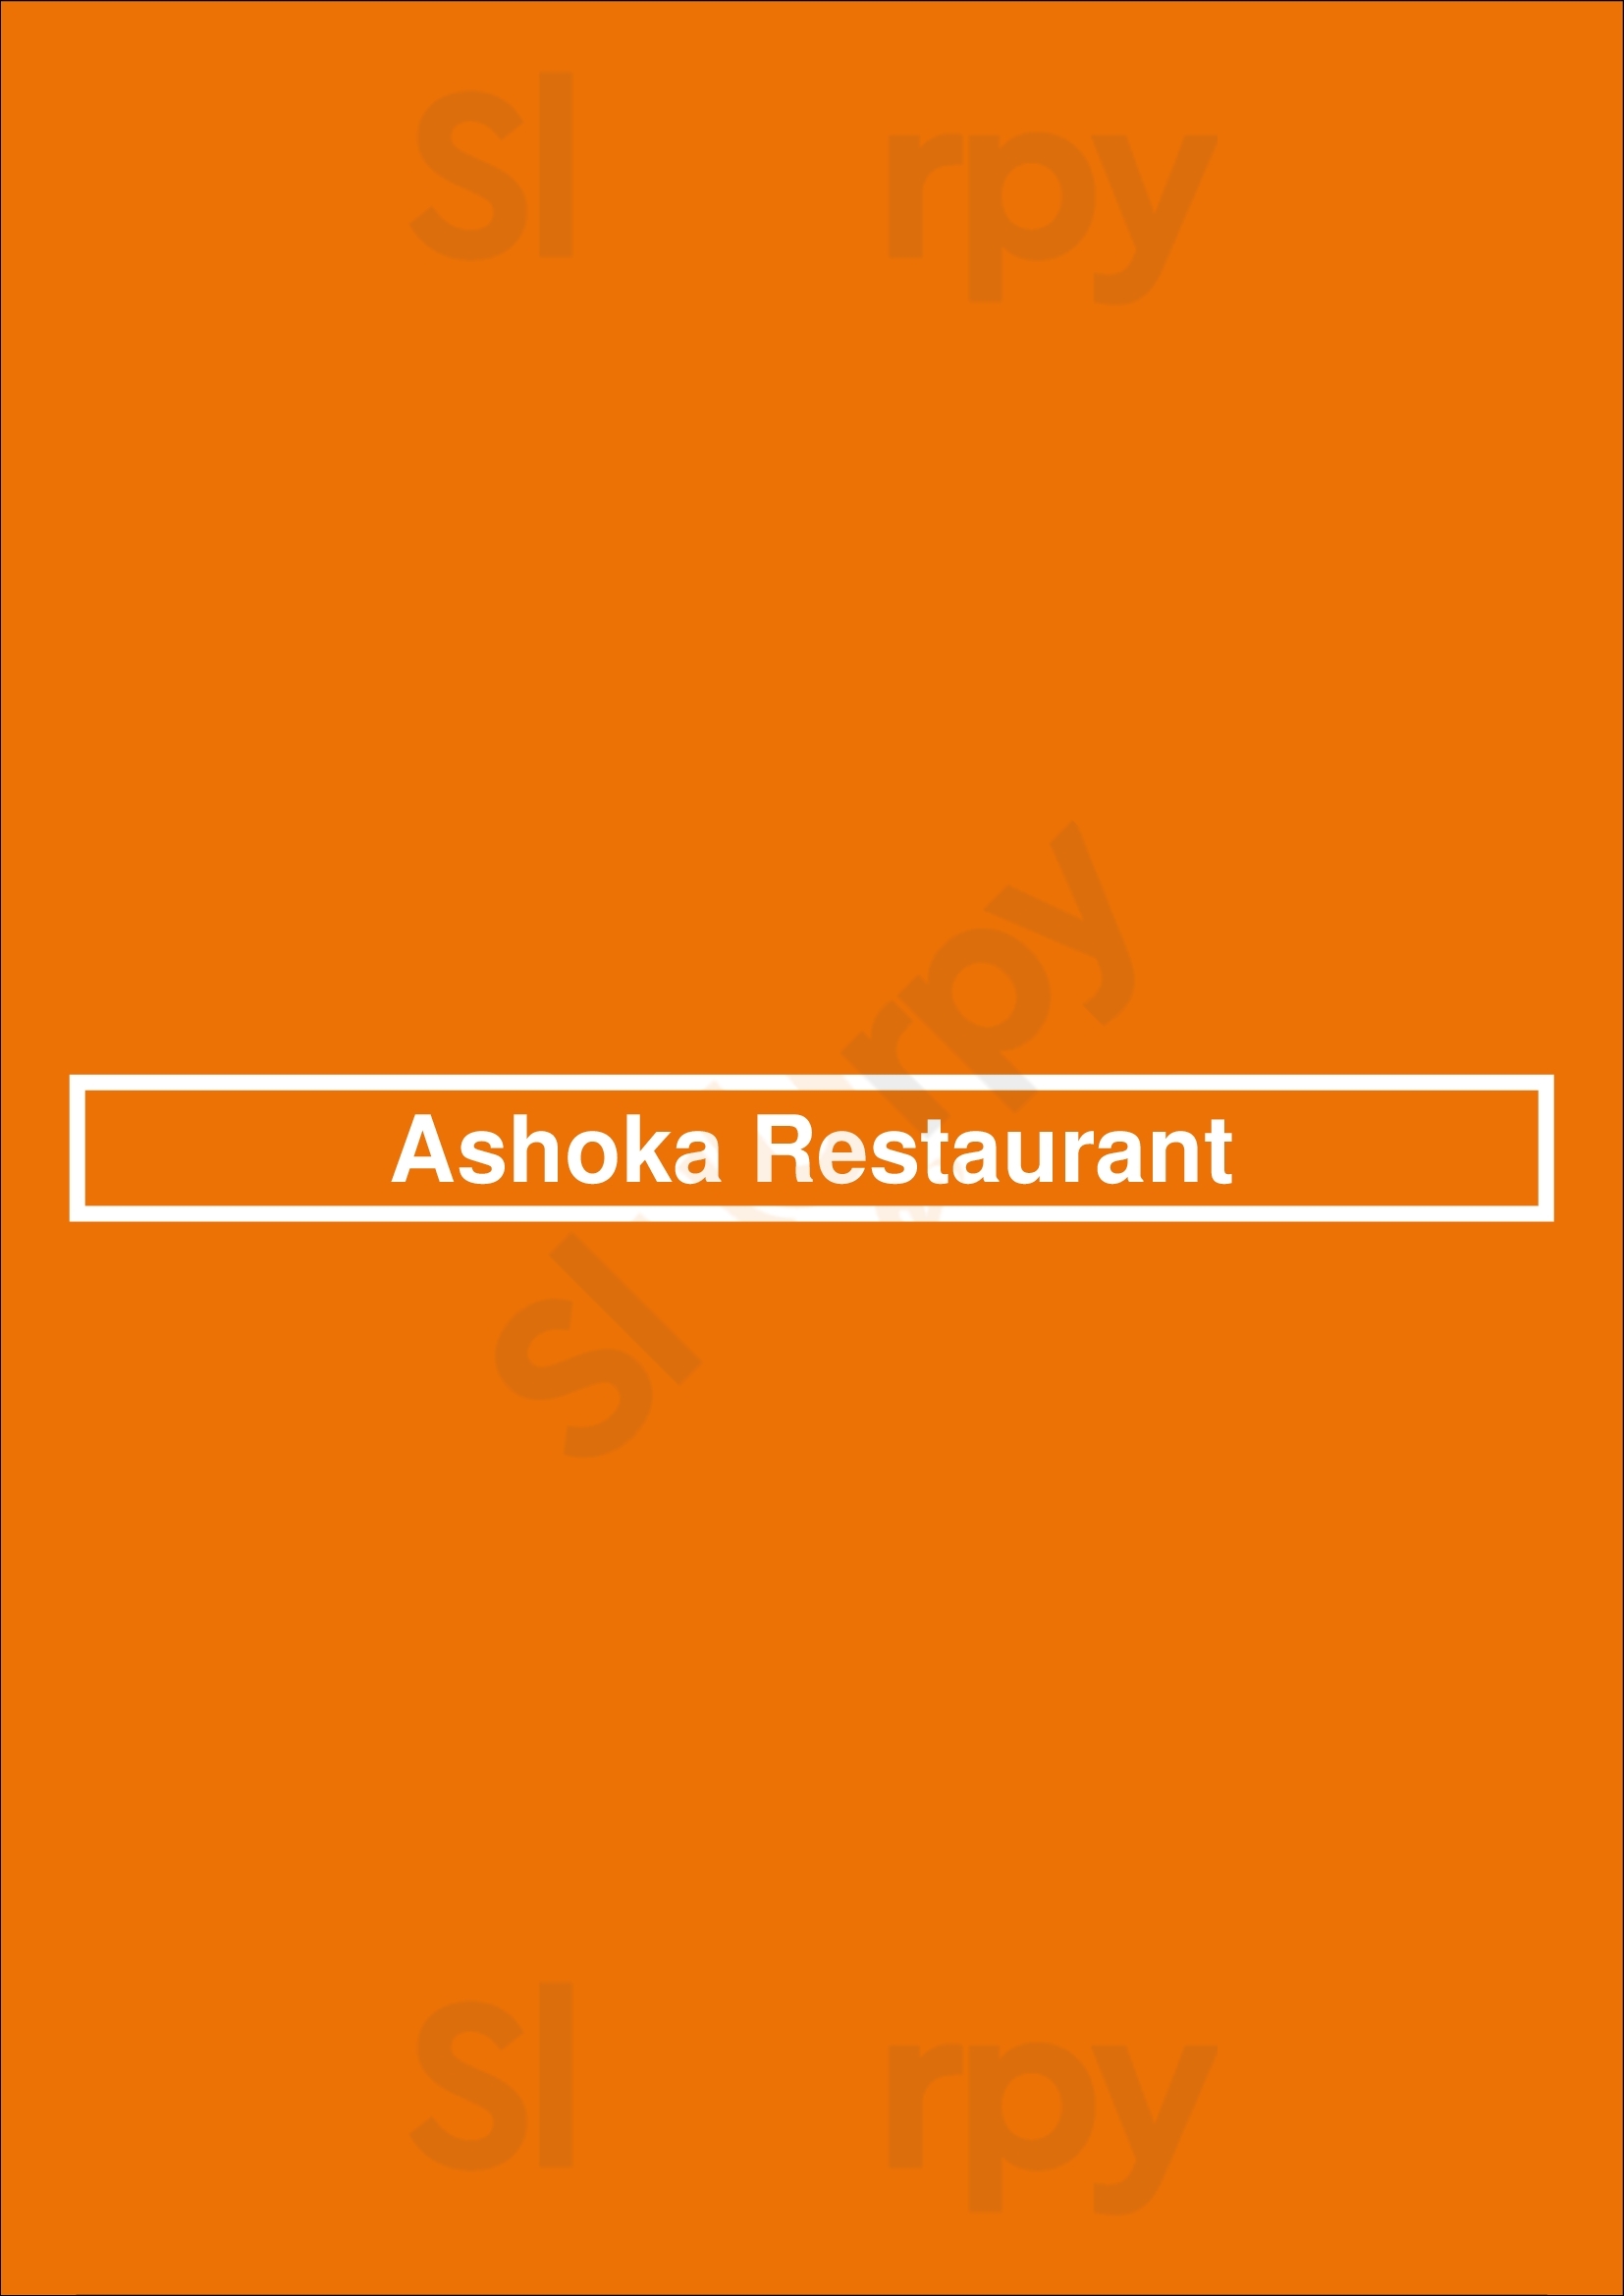 Ashoka Restaurant Amsterdam Menu - 1